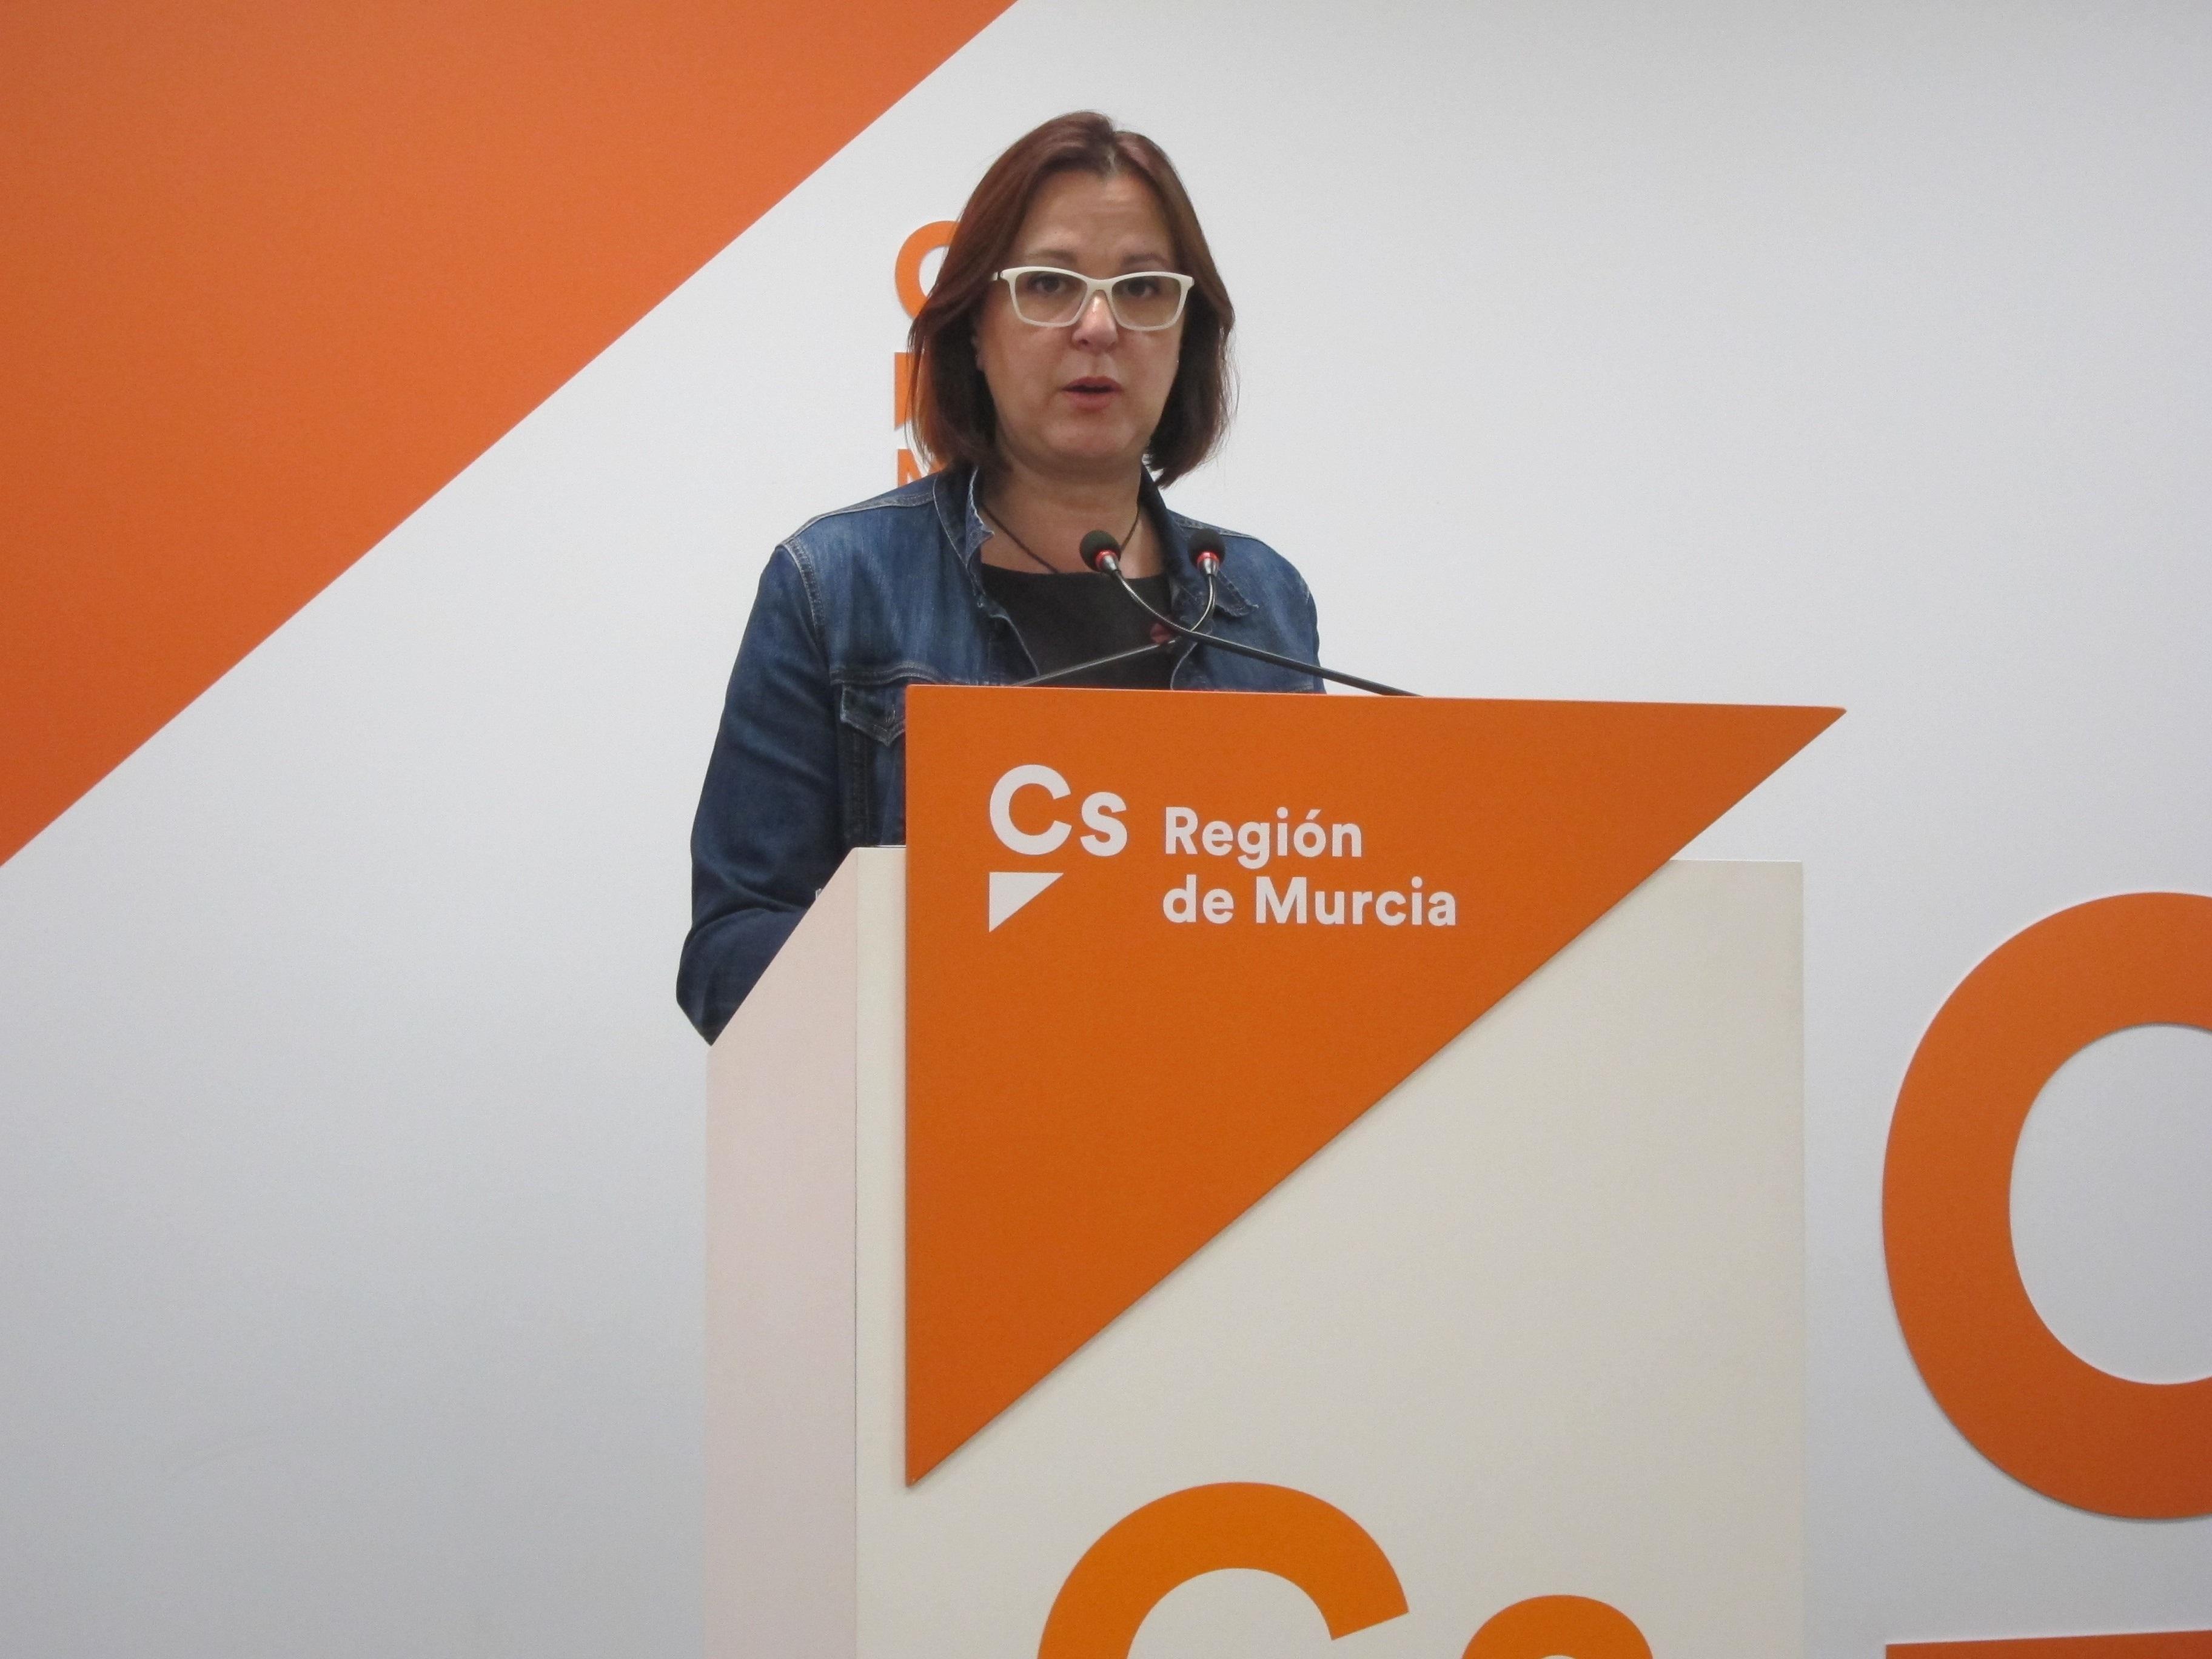 La candidata de Ciudadanos a la presidencia de la Comunidad Autónoma de Murcia Isabel Franco